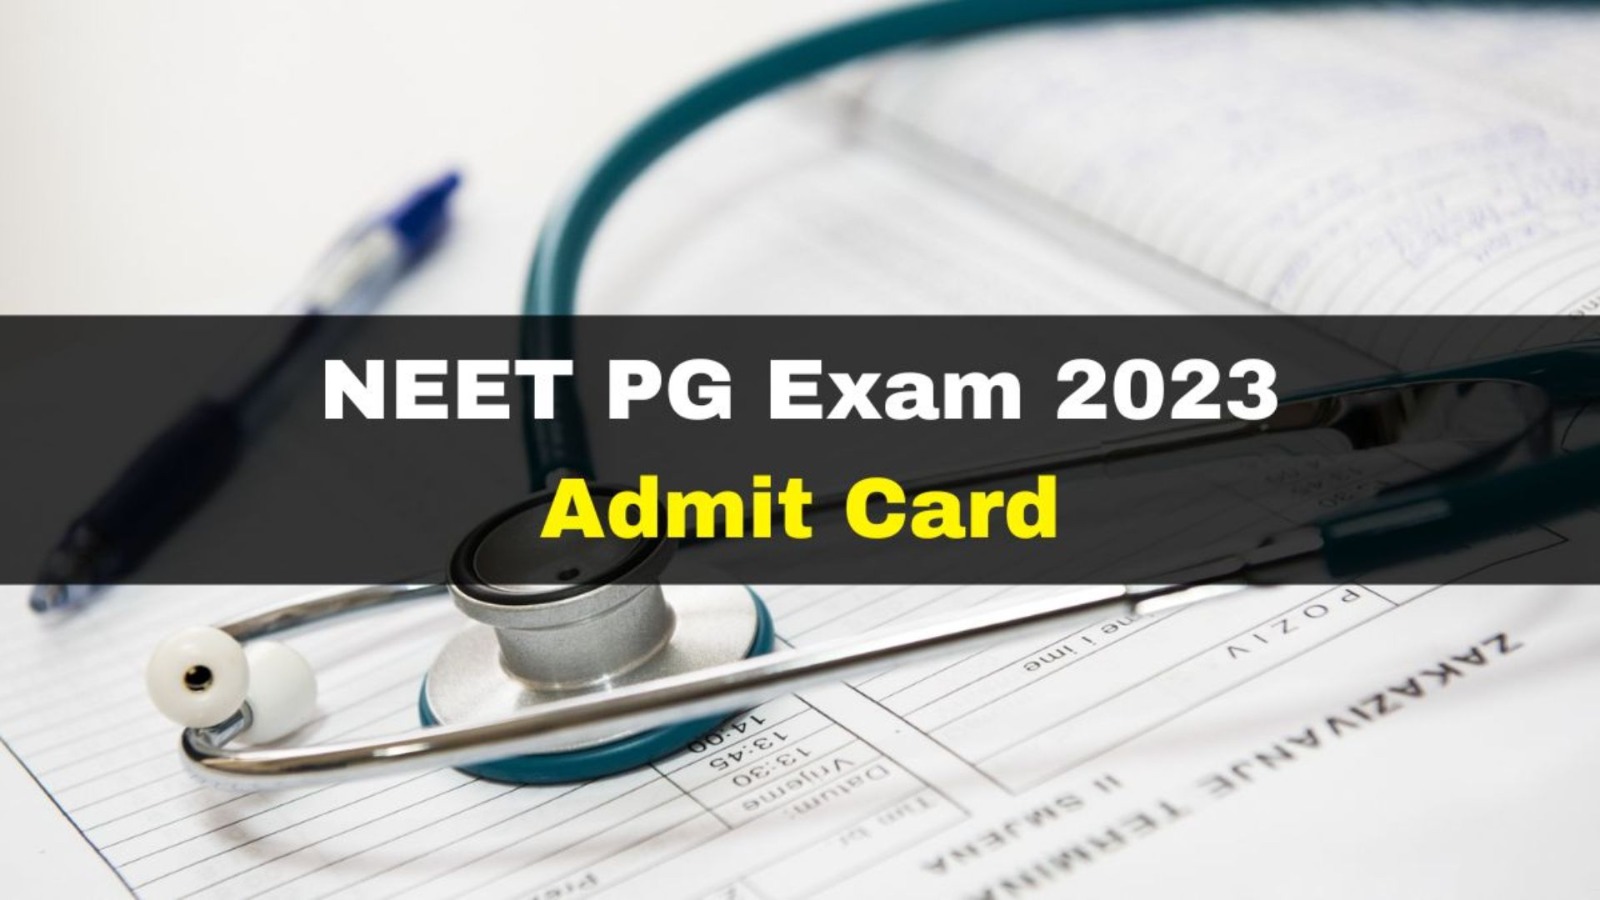 NEET PG 2023 Admit Card: नीट पीजी के लिए एडमिट कार्ड ऐसे करें डाउनलोड